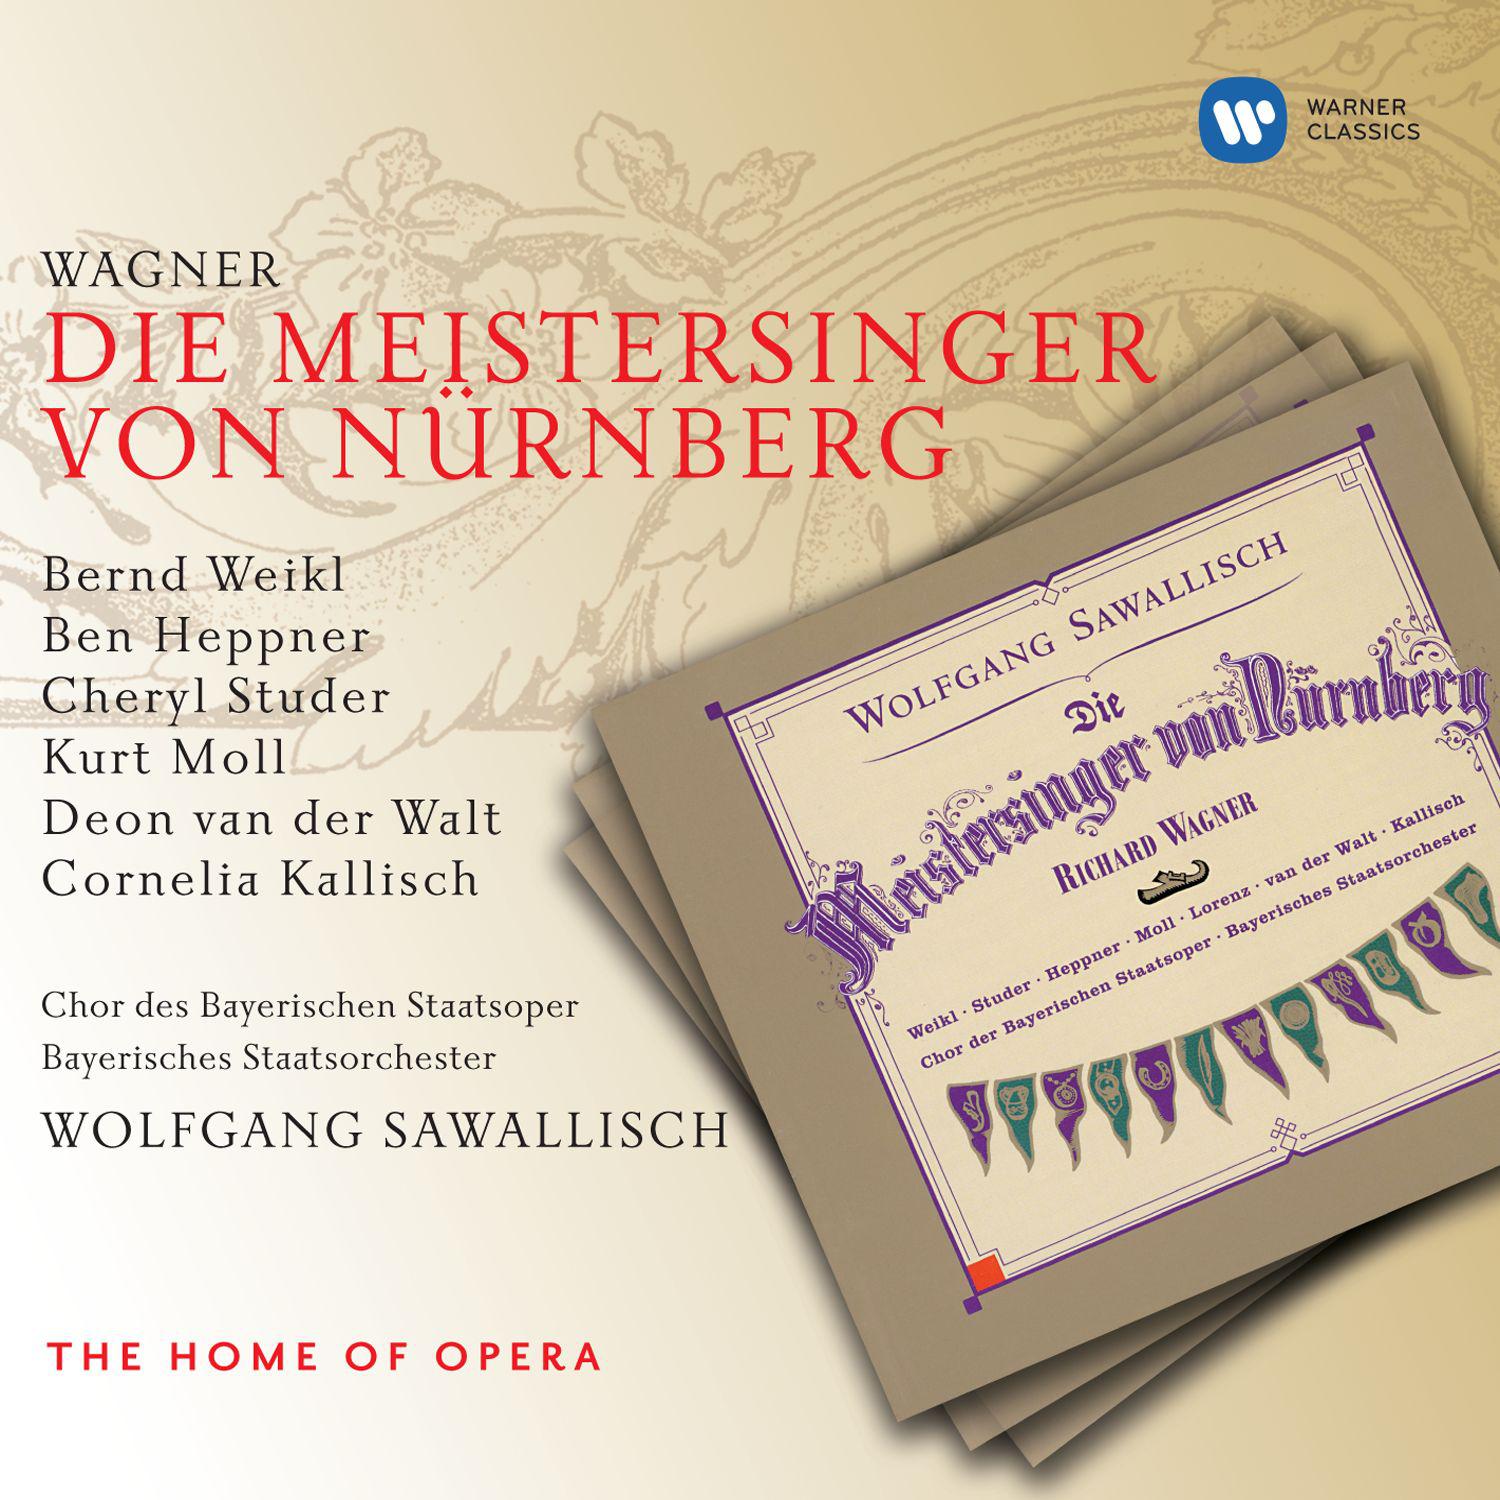 Die Meistersinger von Nürnberg, Act 3, Scene 5:Das Lied, fürwahr, ist nicht von mir